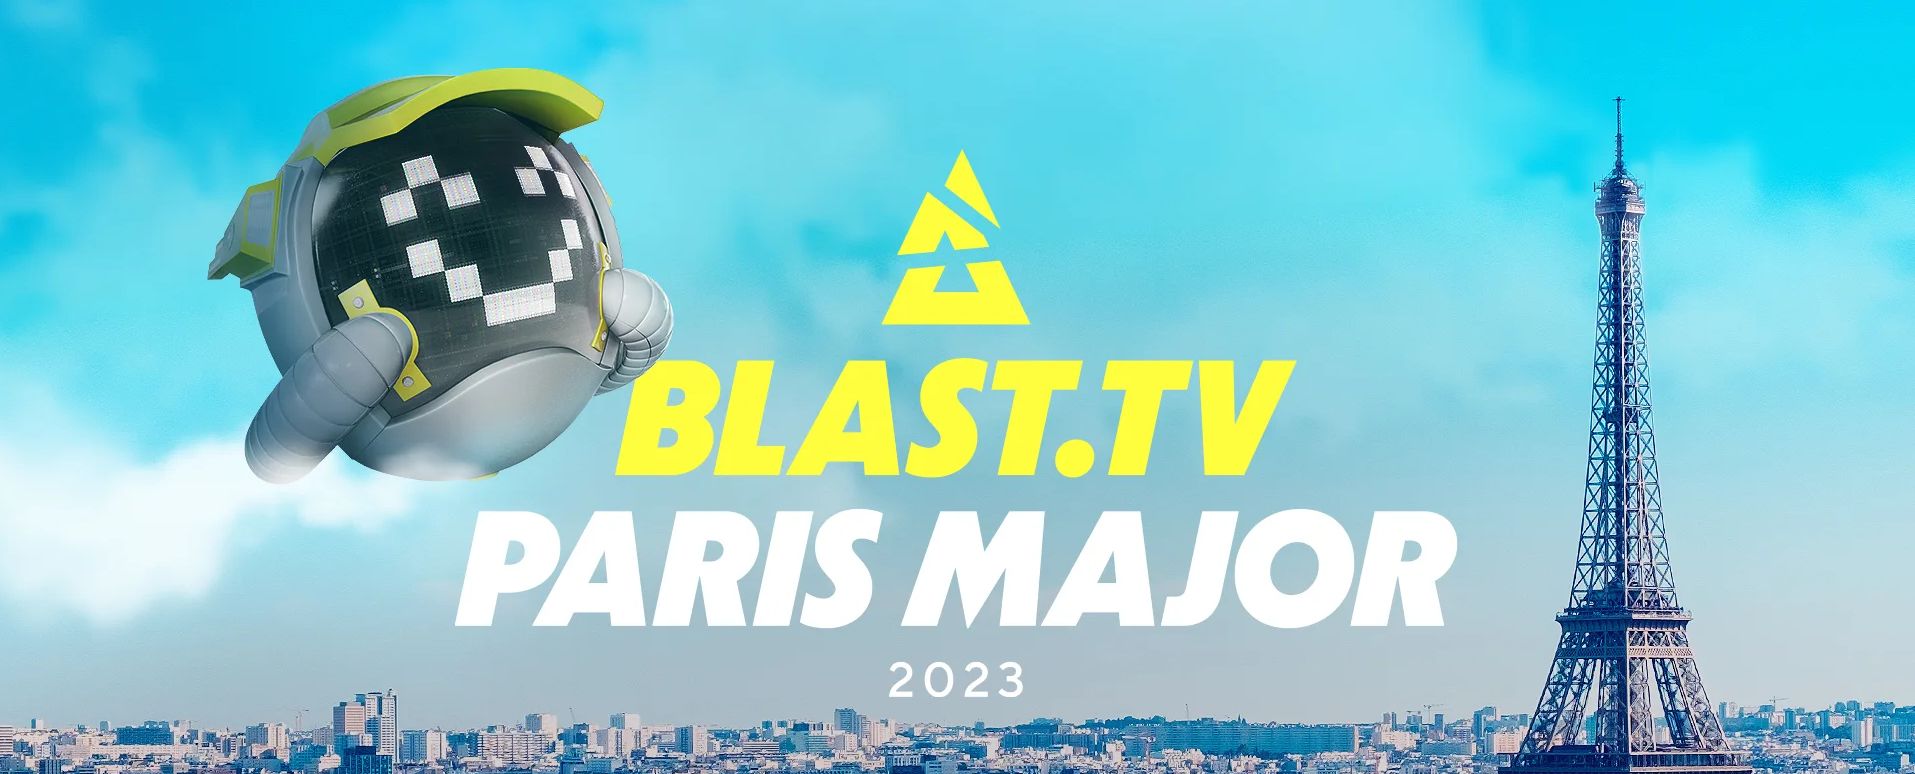 Почему NAVI не пройдут на последний мейджор по CS:GO? Превью европейских RMR-турниров к BLAST.tv Paris Major 2023